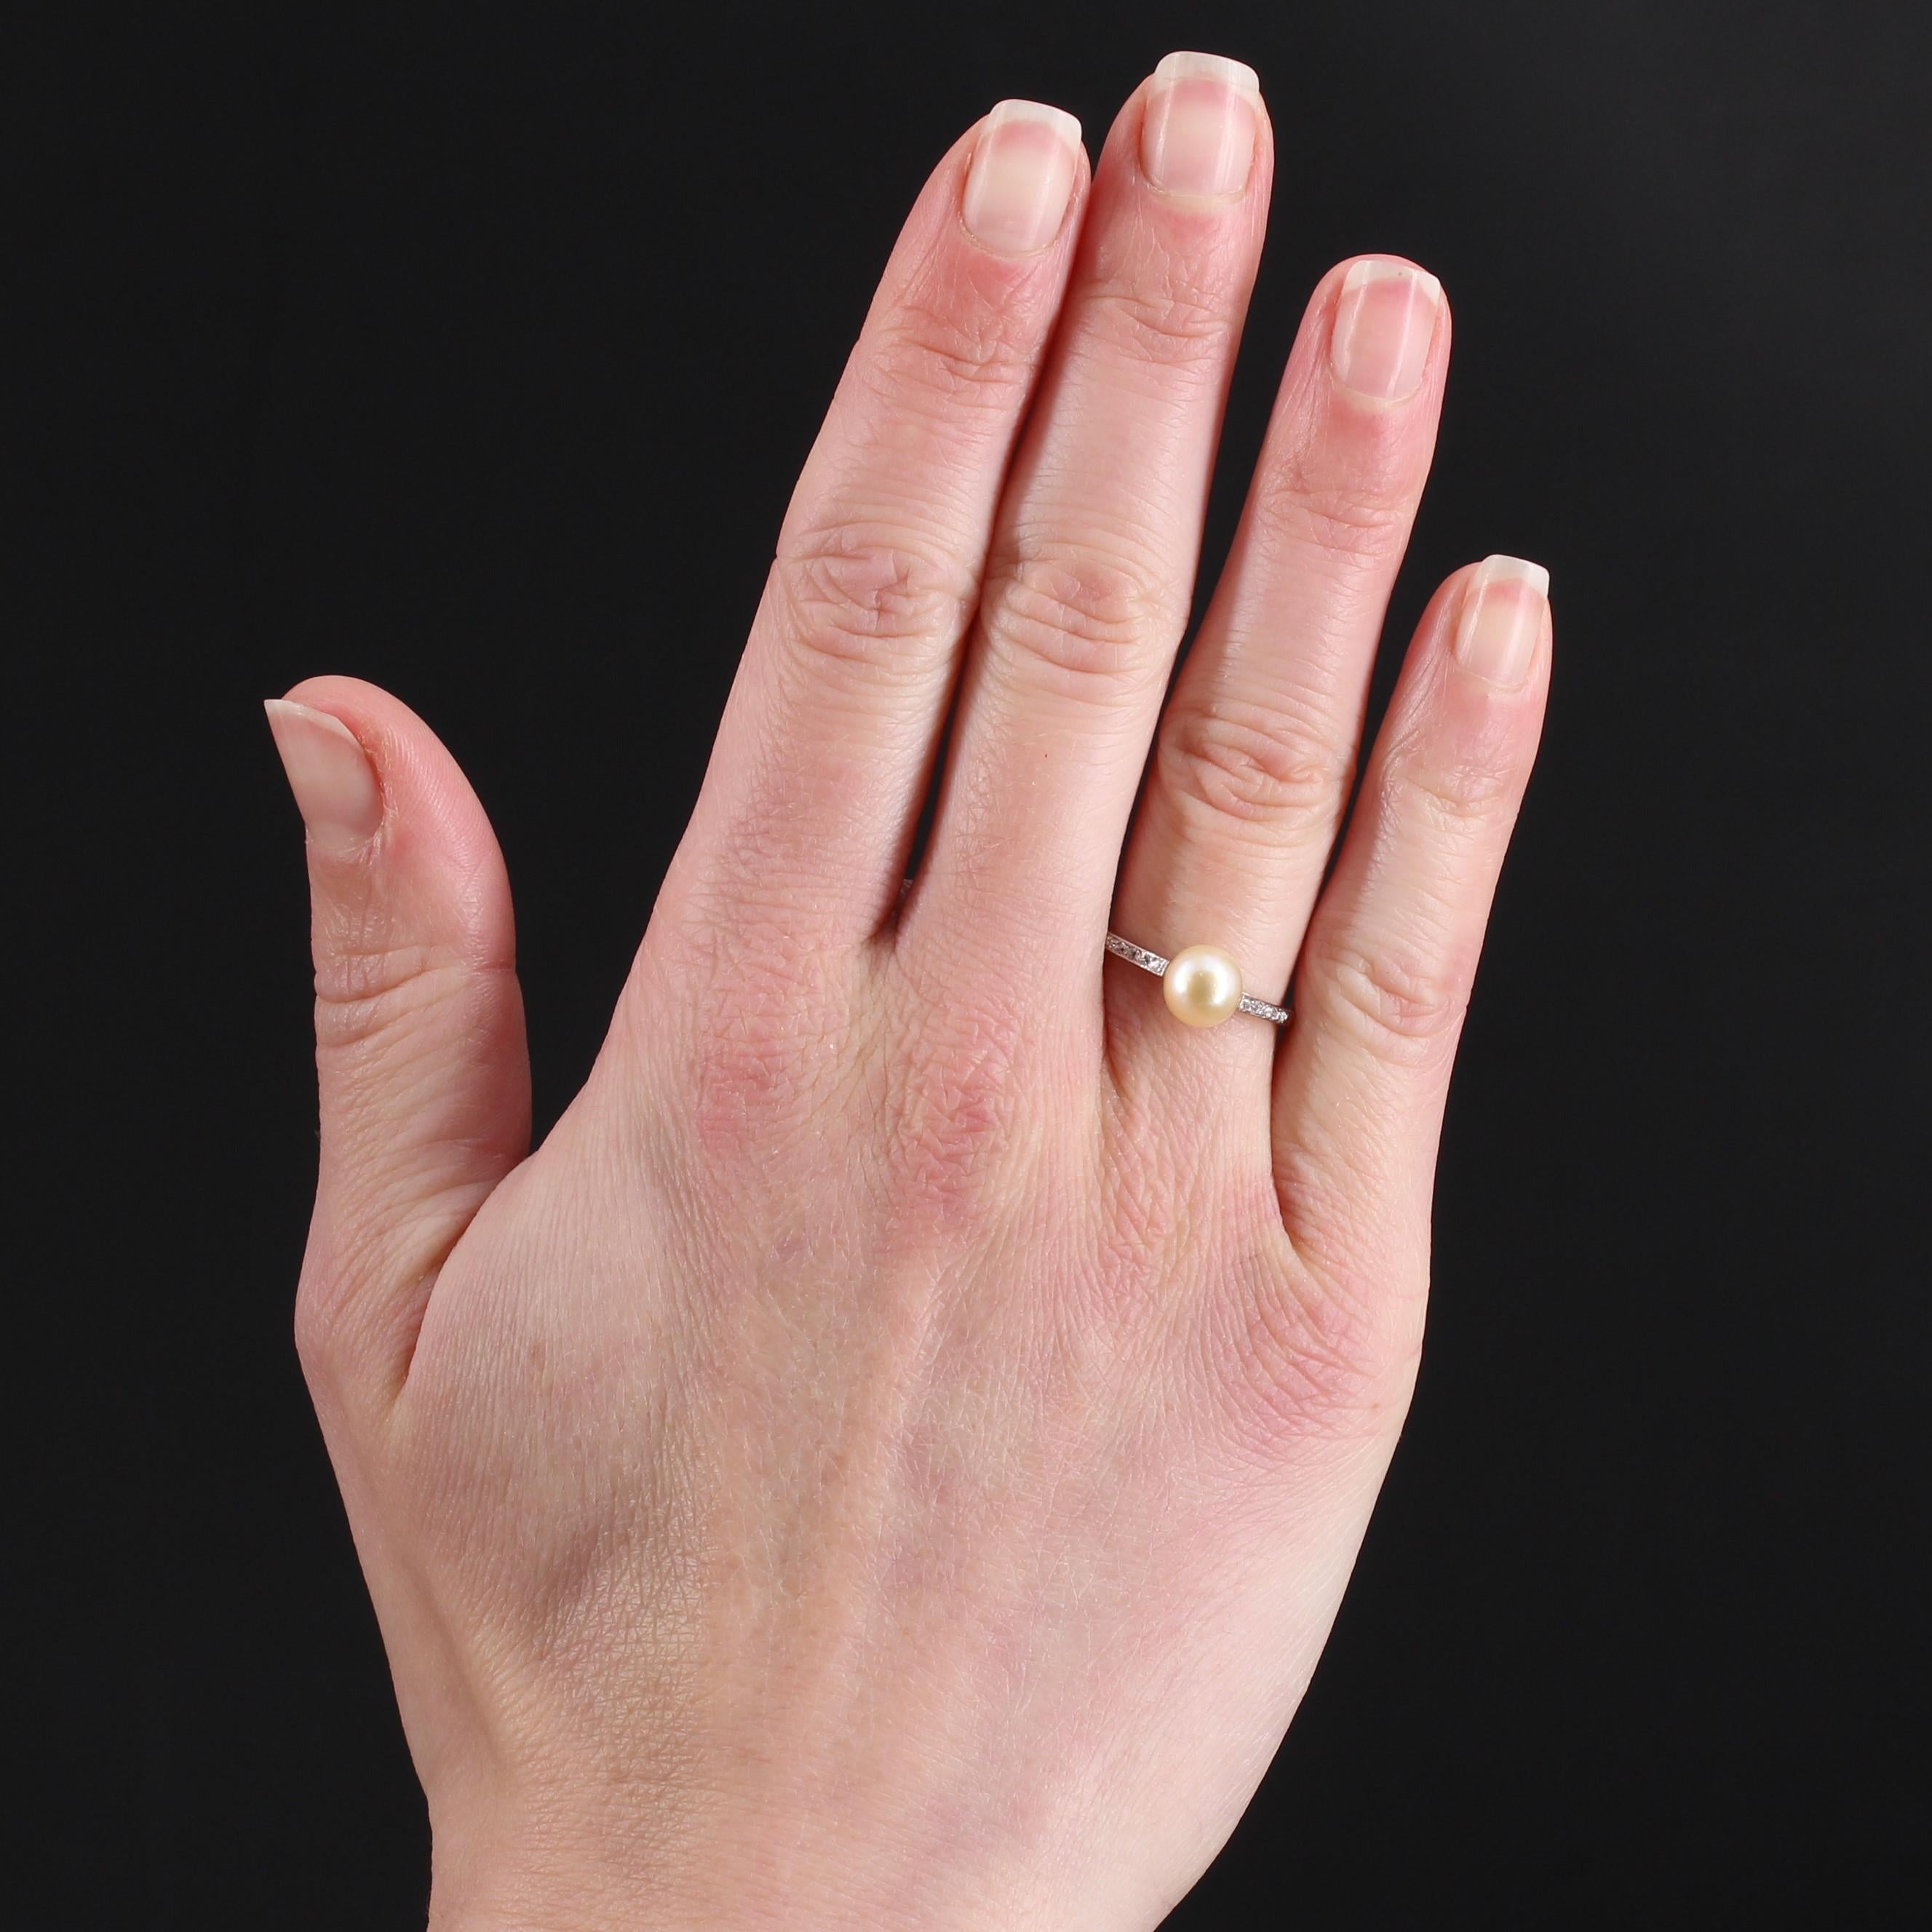 Platinring, Hundekopfpunze.
Charmante antike Art Deco Ring ist es auf der Oberseite mit einer goldenen Perle verziert angeblich fein. Auf beiden Seiten ist der Ringanfang mit 2x5 antiken Diamanten im Brillantschliff verziert. Die Perle wird von